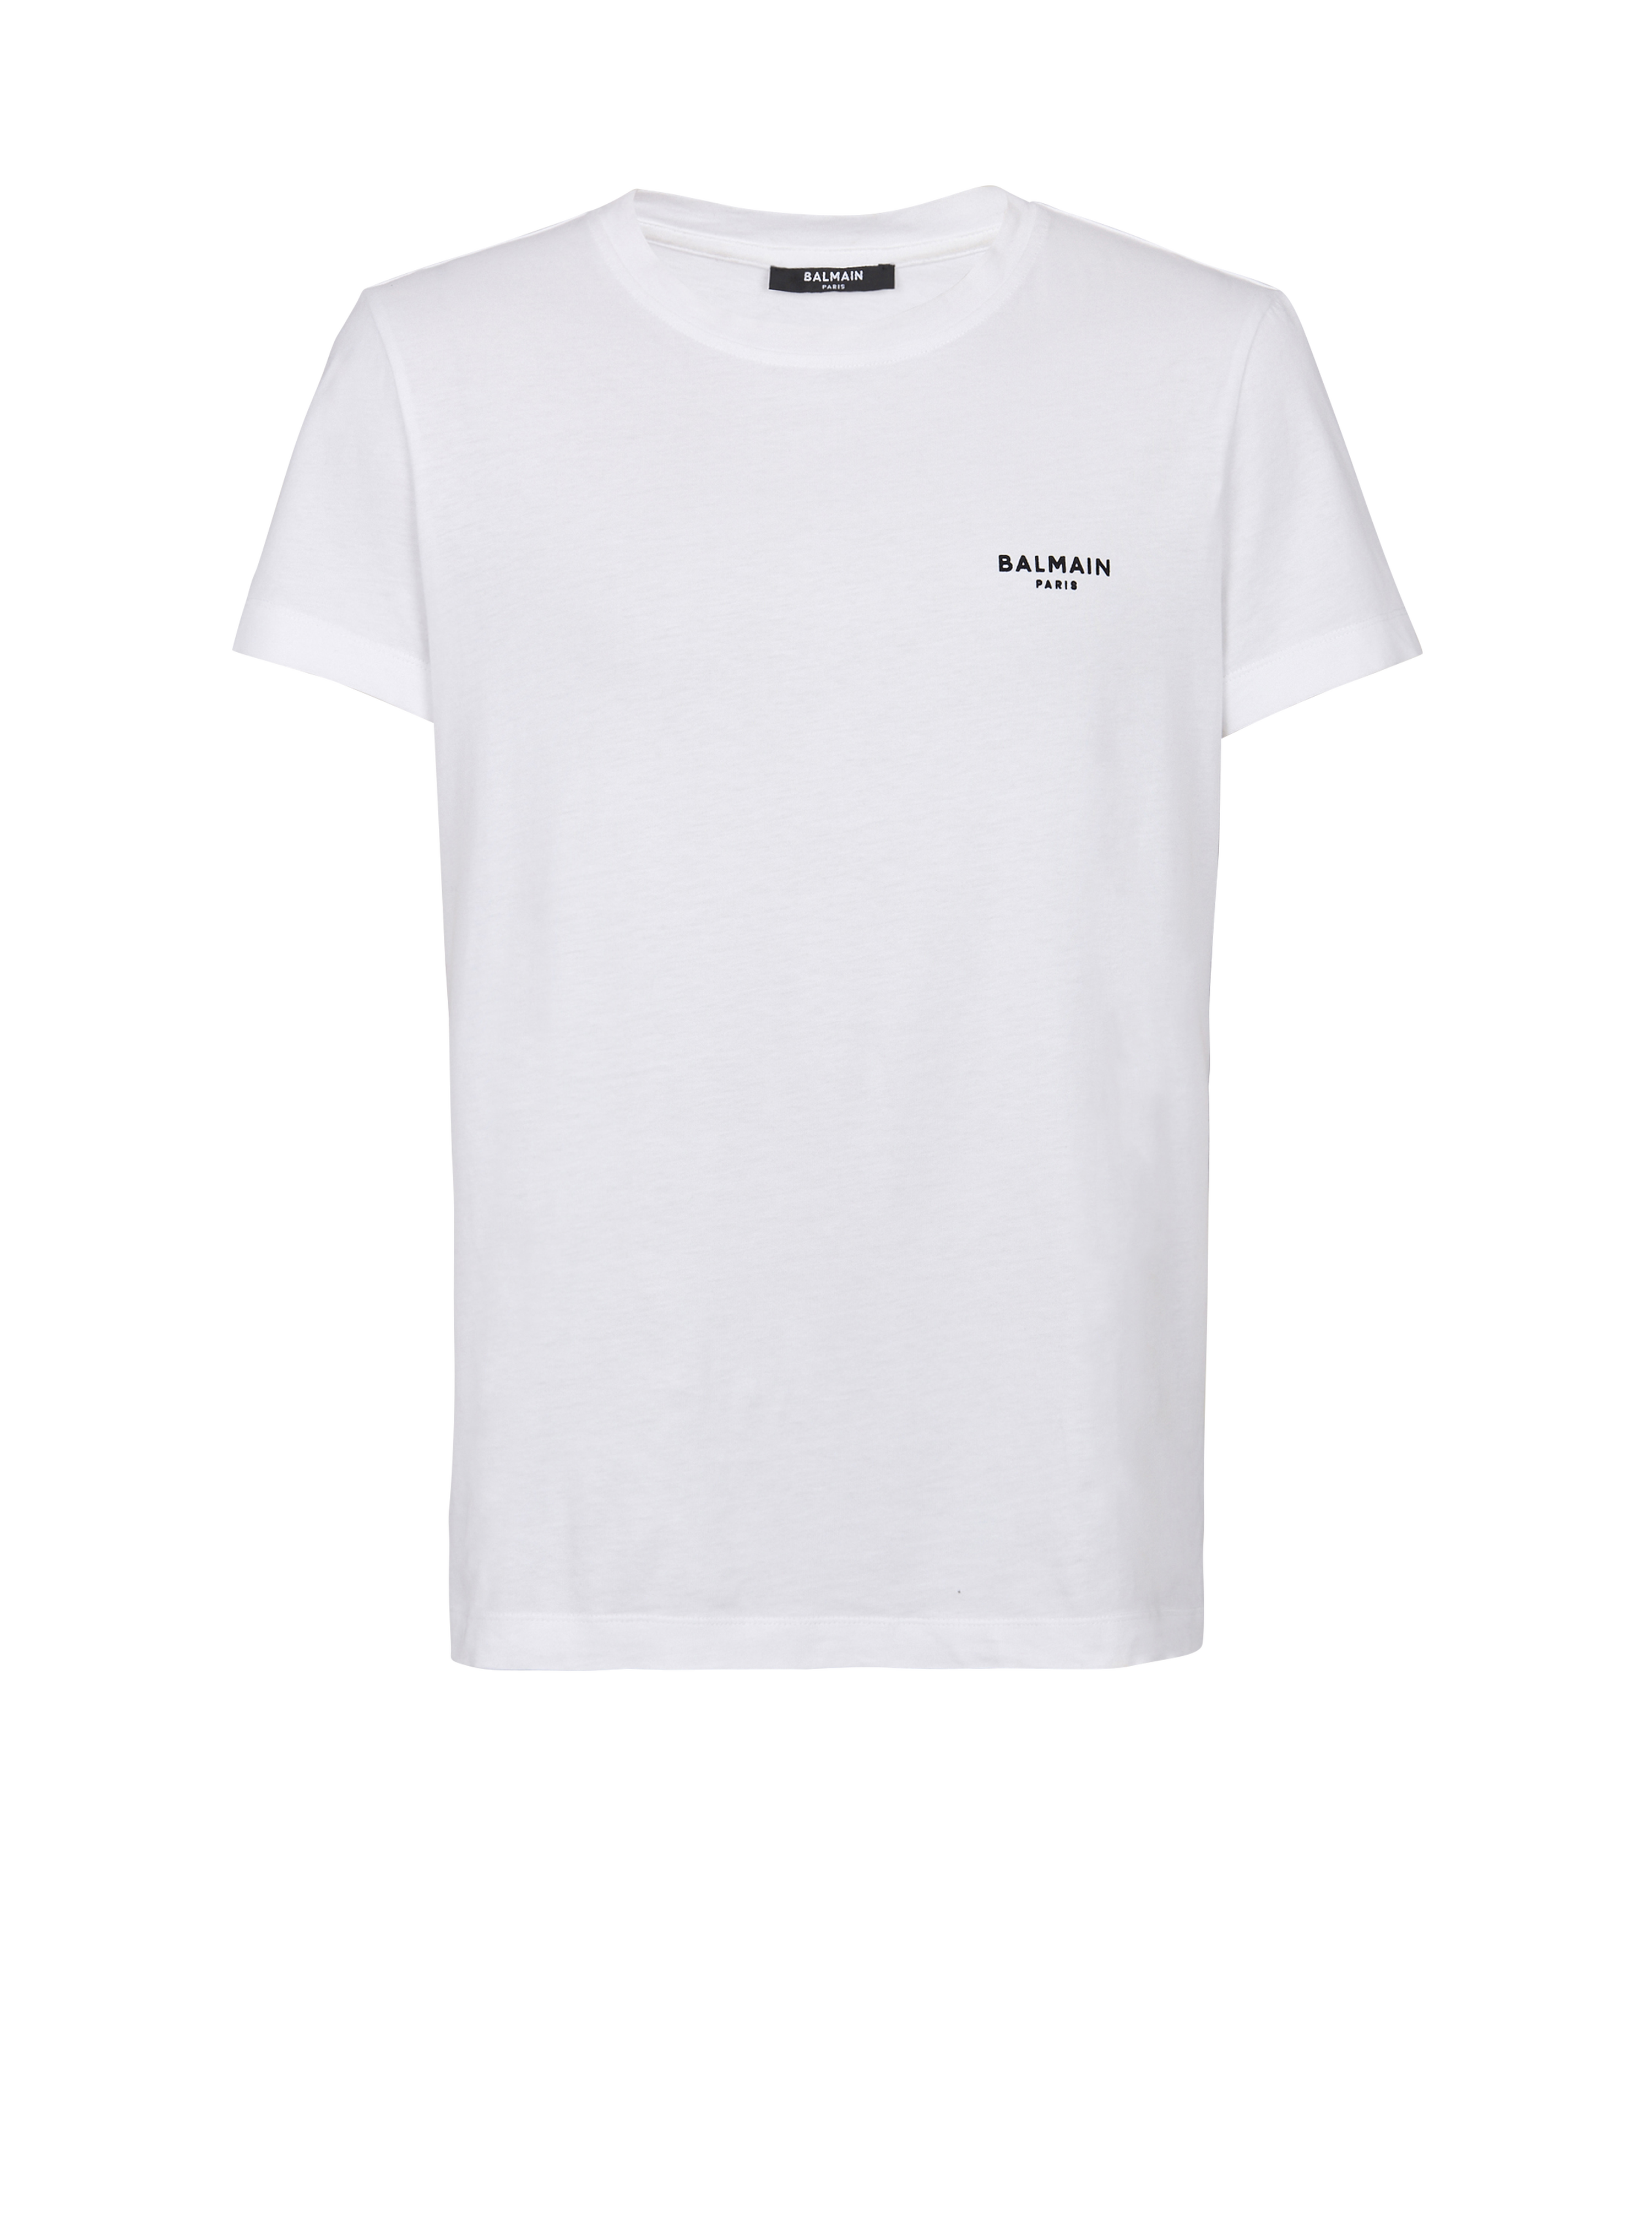 Camiseta de algodón de diseño ecológico con un pequeño logotipo de Balmain Paris flocado, blanco